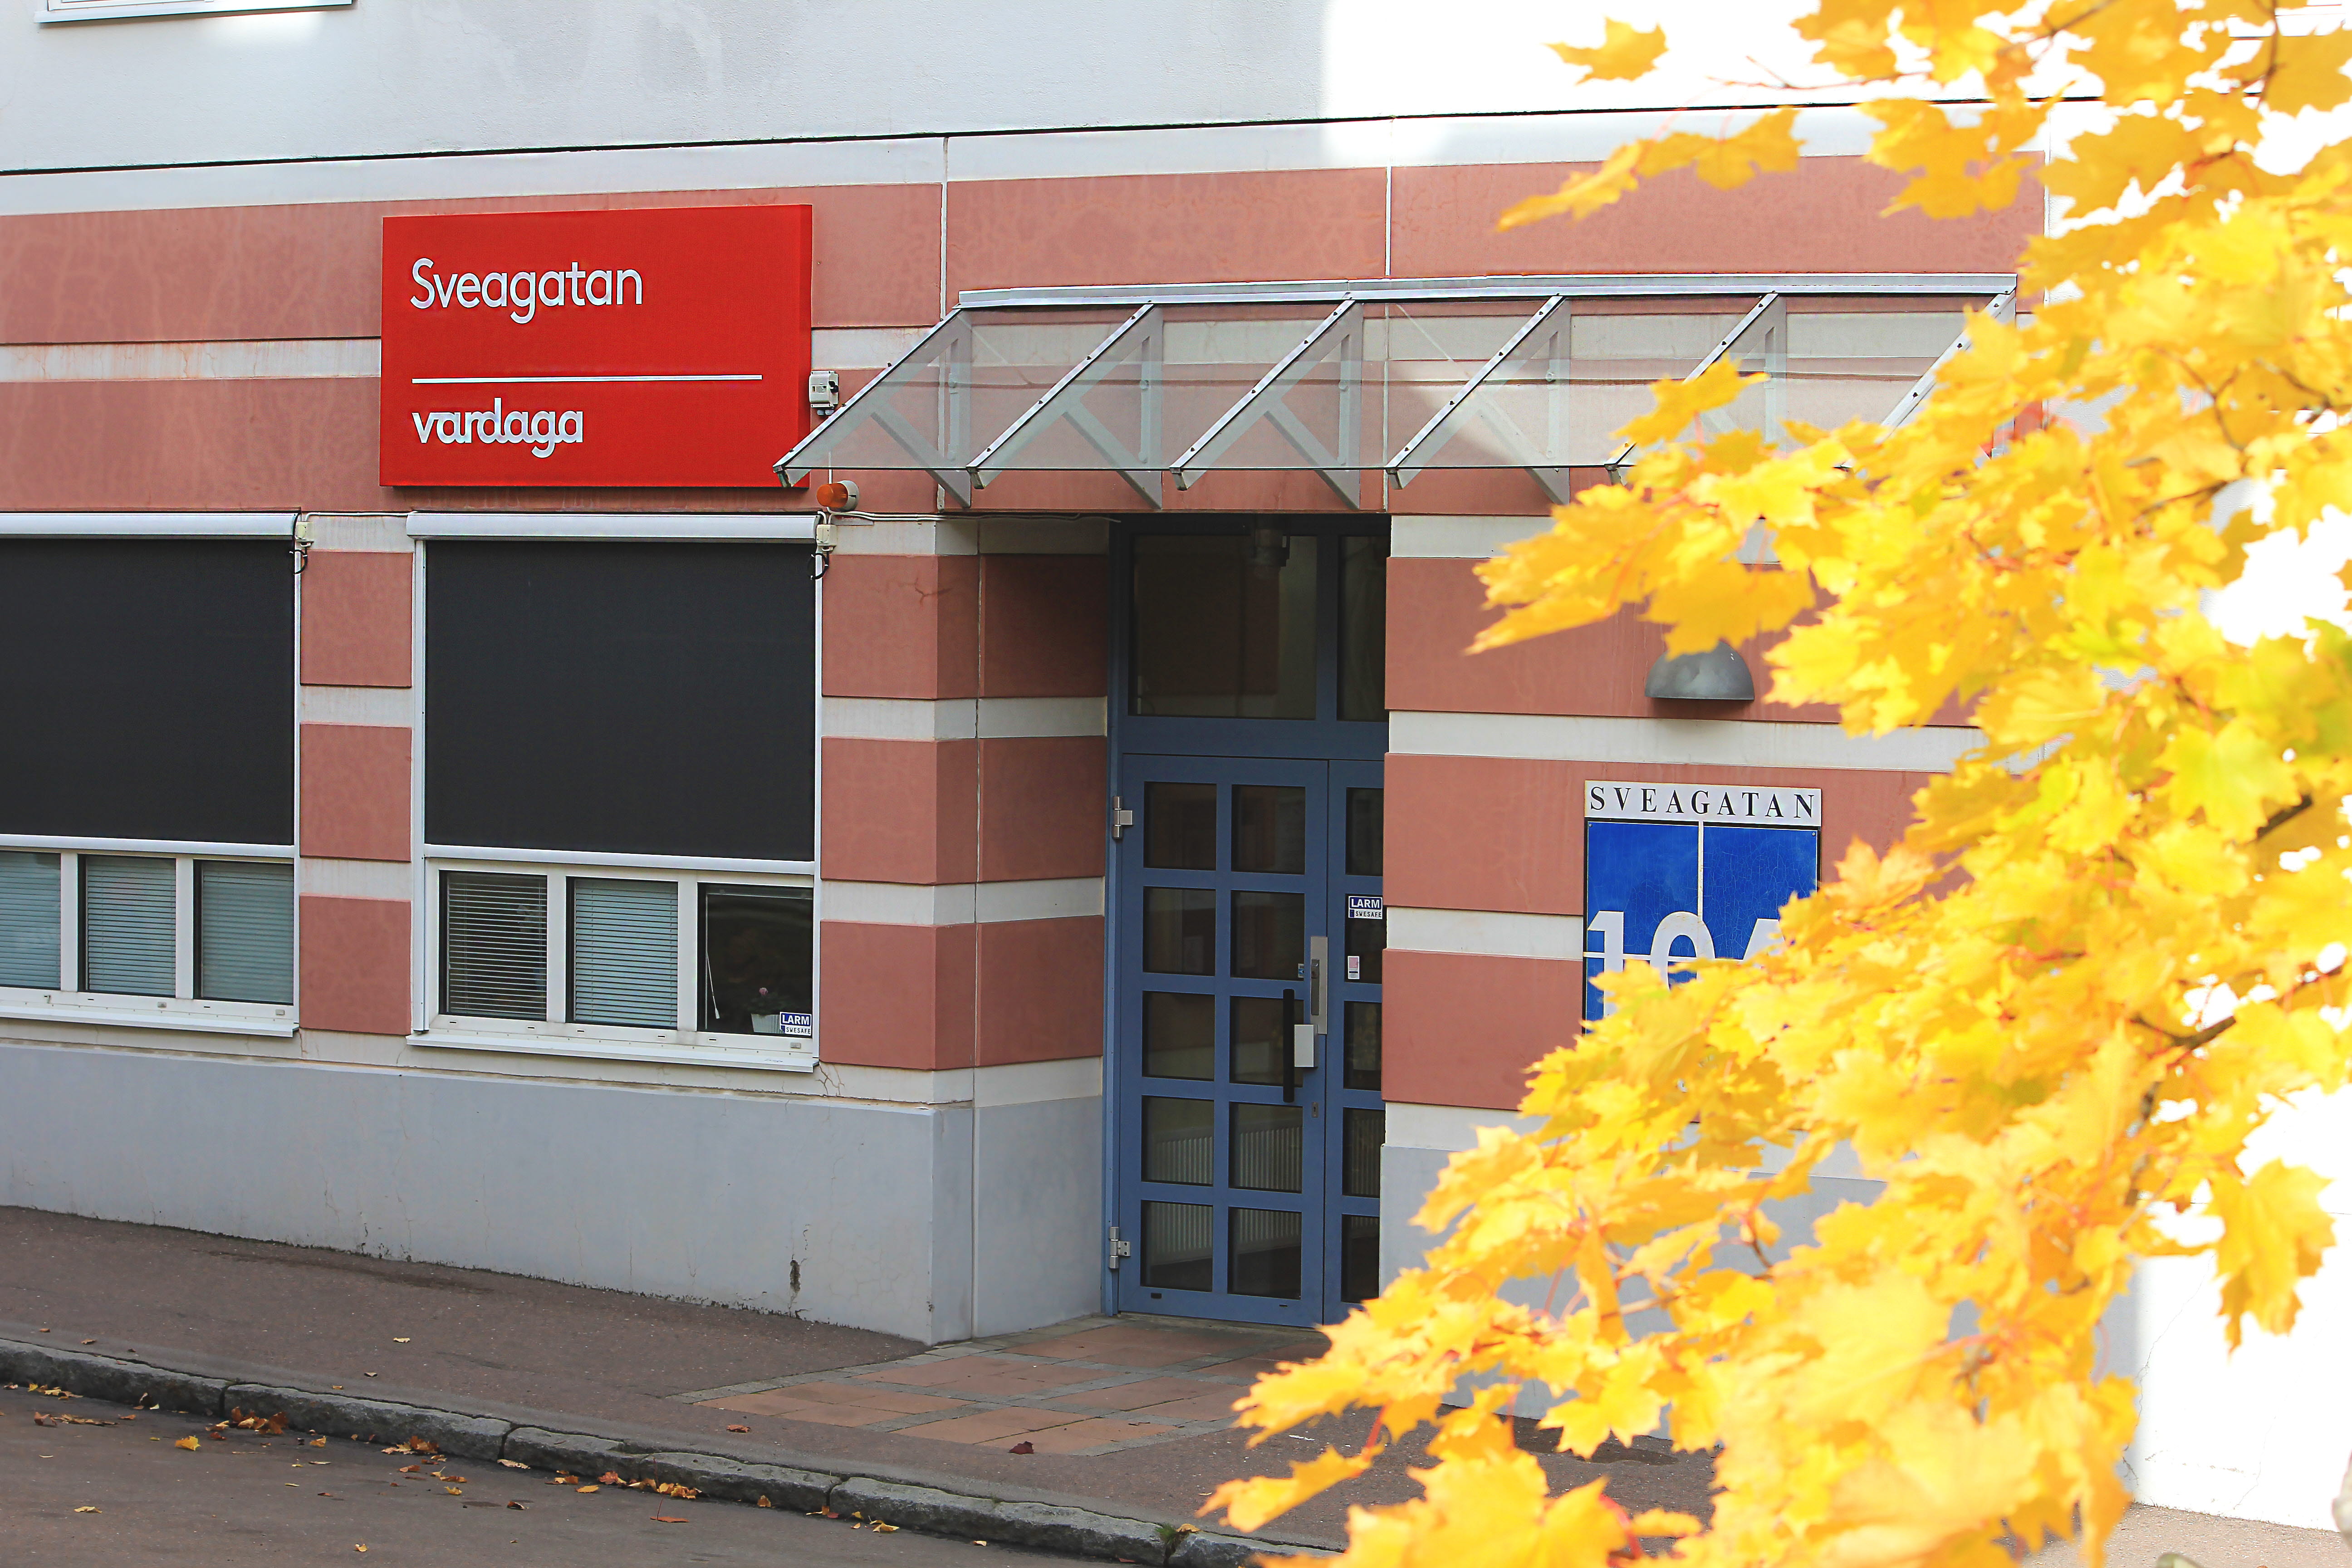 Sveagatans huvudentré med en röd skylt ovan med texten "Sveagatan, Vardaga". Bredvid byggnanden syns gula löv från en lönn.